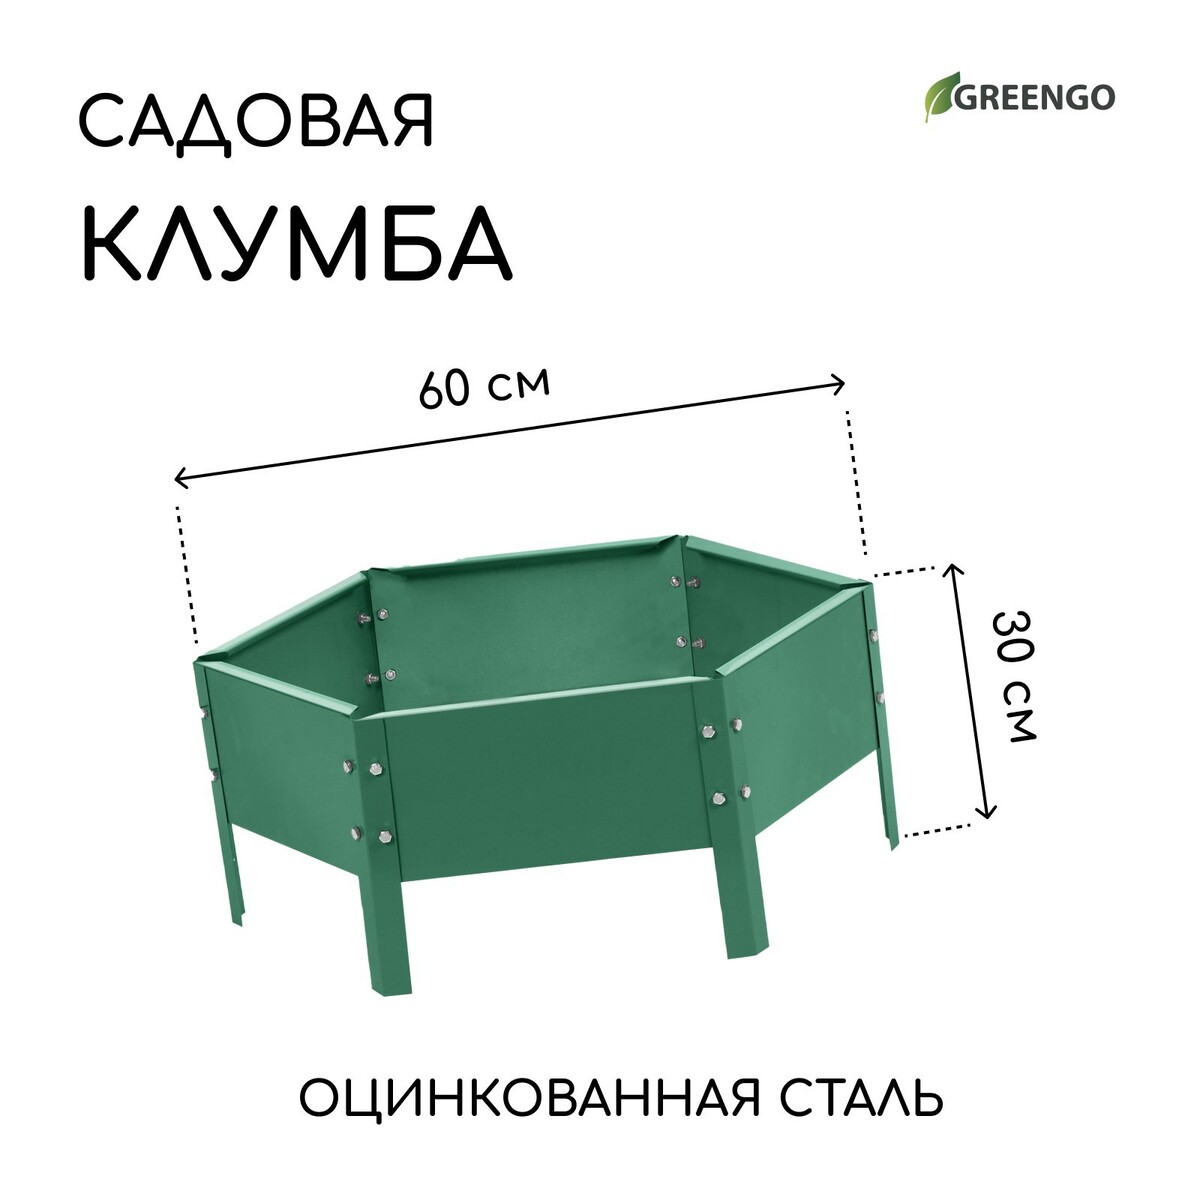 Клумба оцинкованная, d = 60 см, h = 15 см, зеленая, greengo клумба оцинкованная 50 × 50 × 15 см оранжевая